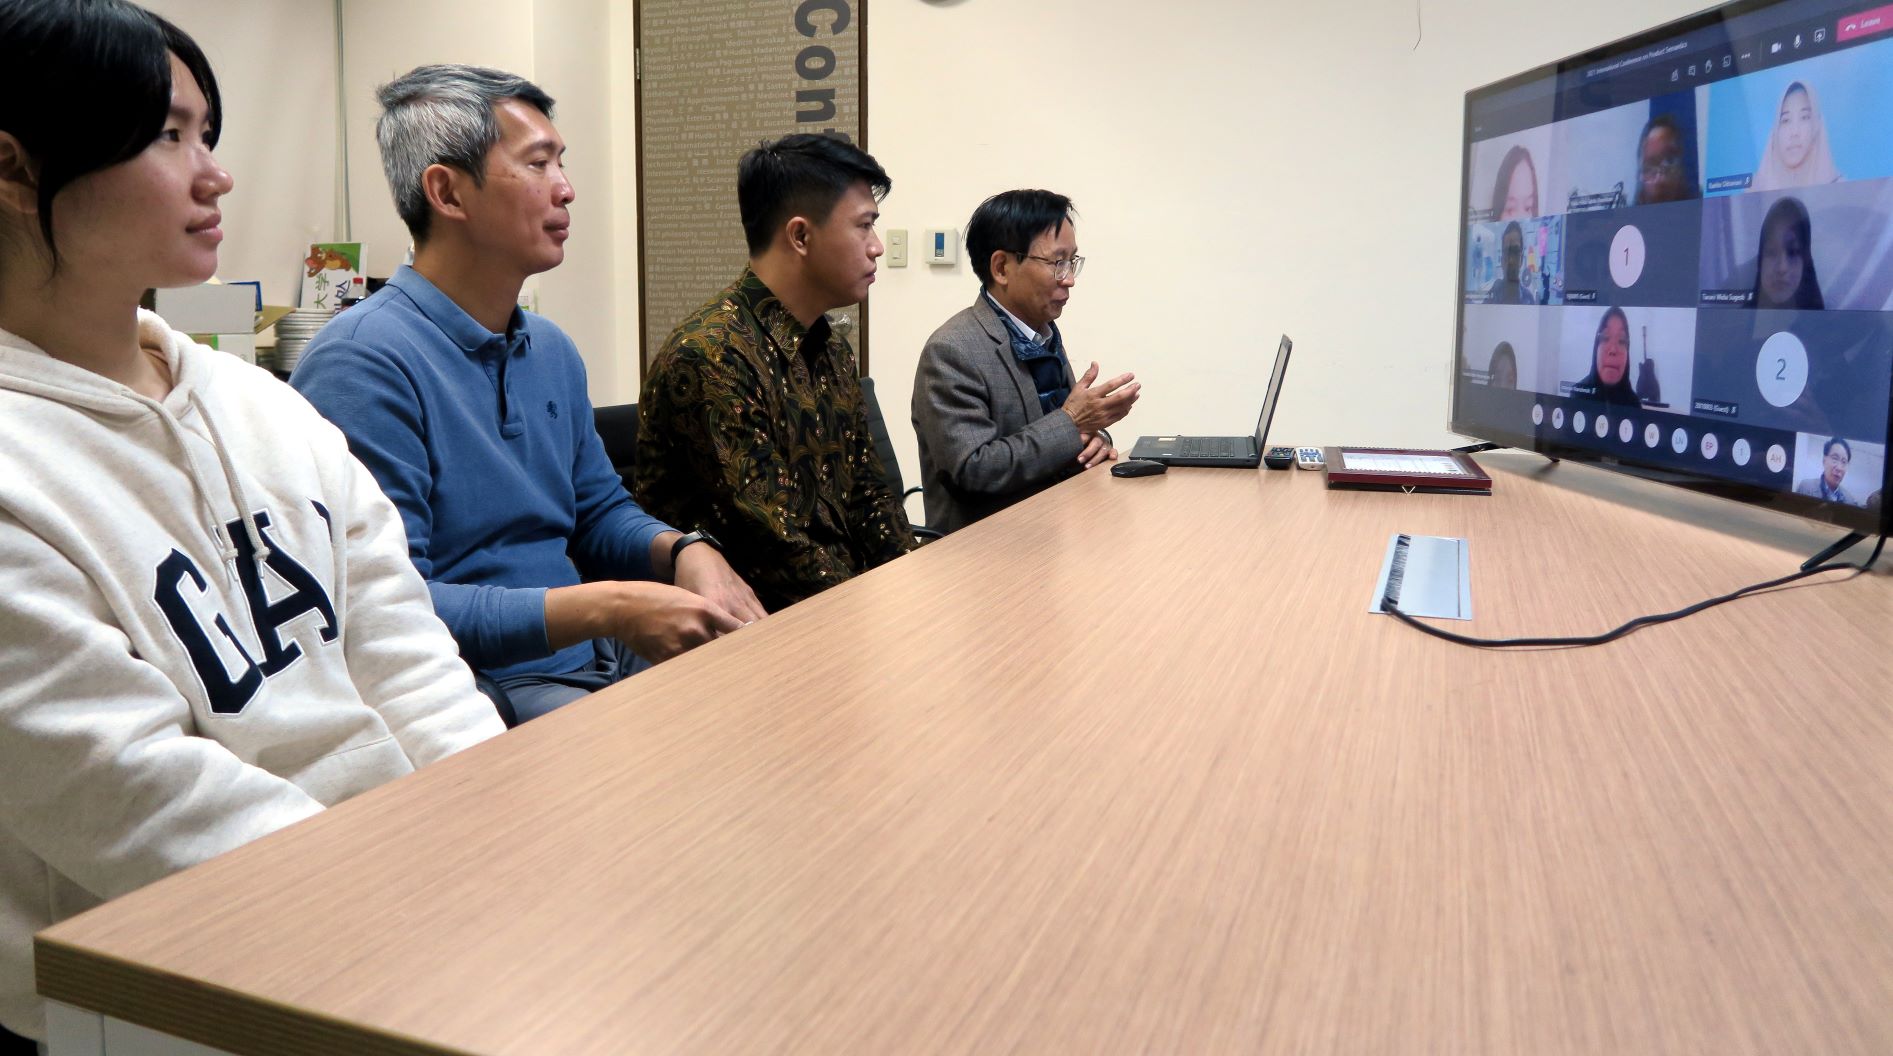 國際學院陳英輝院長 (右起) 在會議上演講。會議參與Prof. Peter Ardhianto、蔡楨永老師、曾彥綾同學。